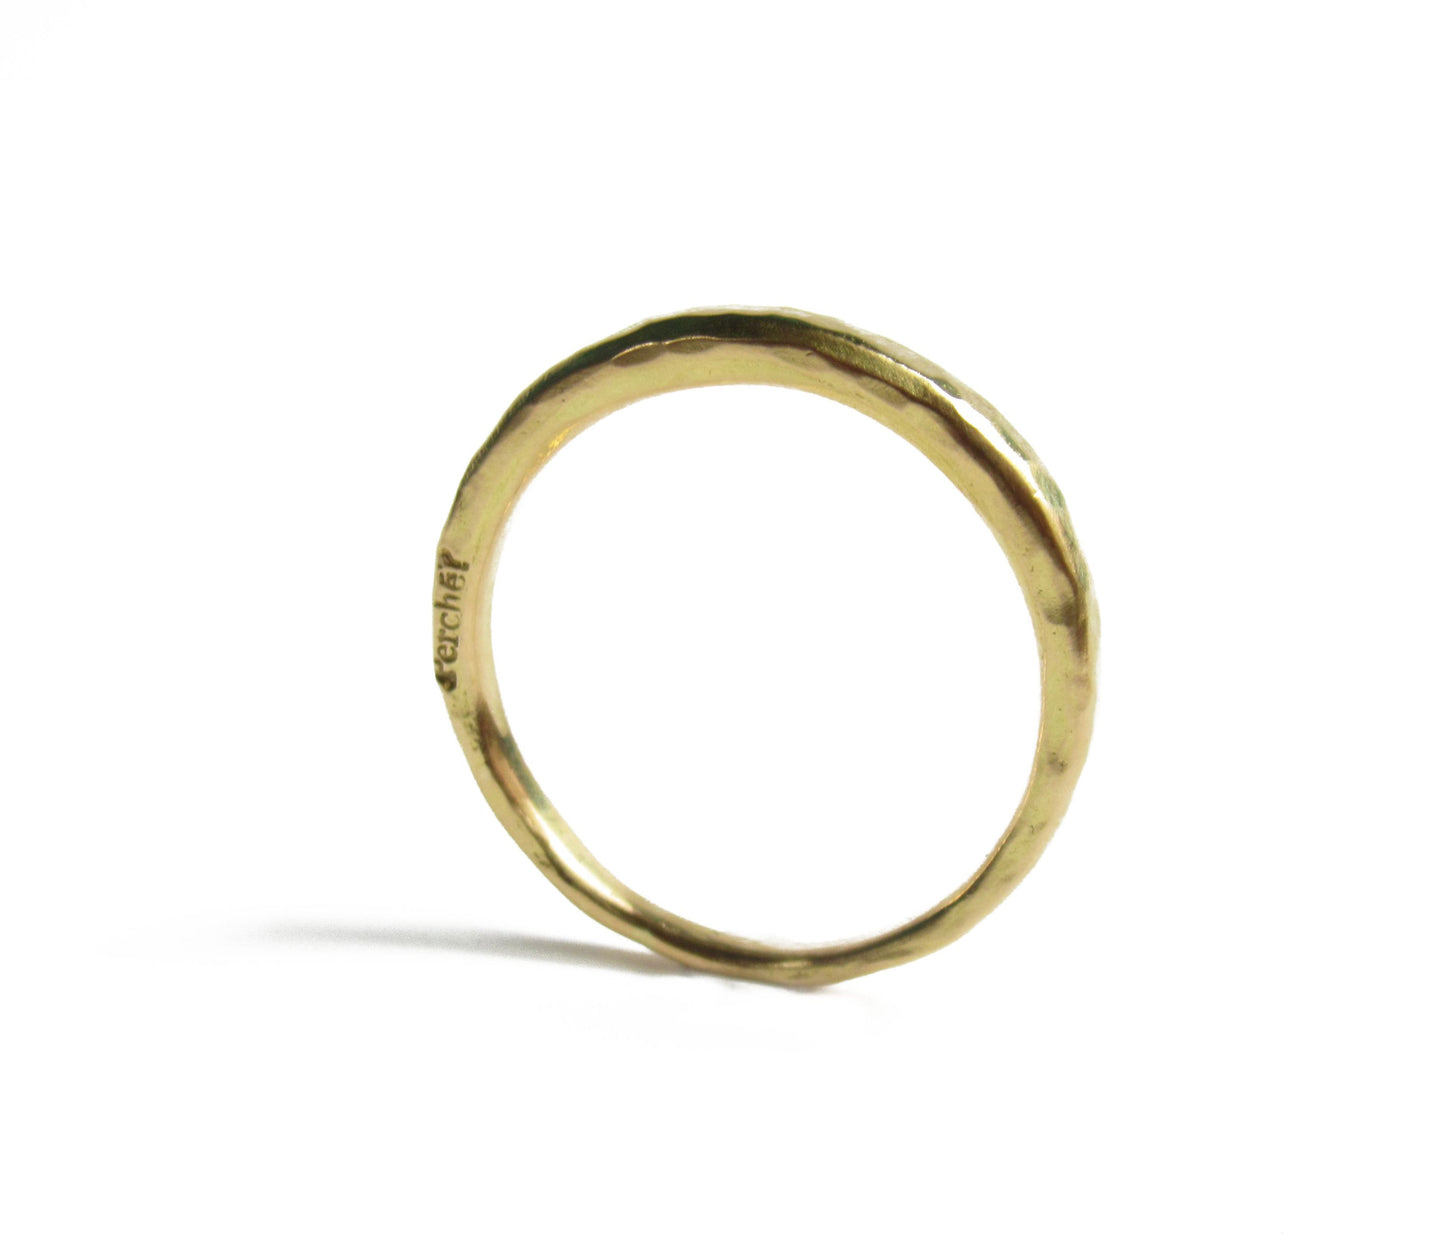 mikazuki marriage ring